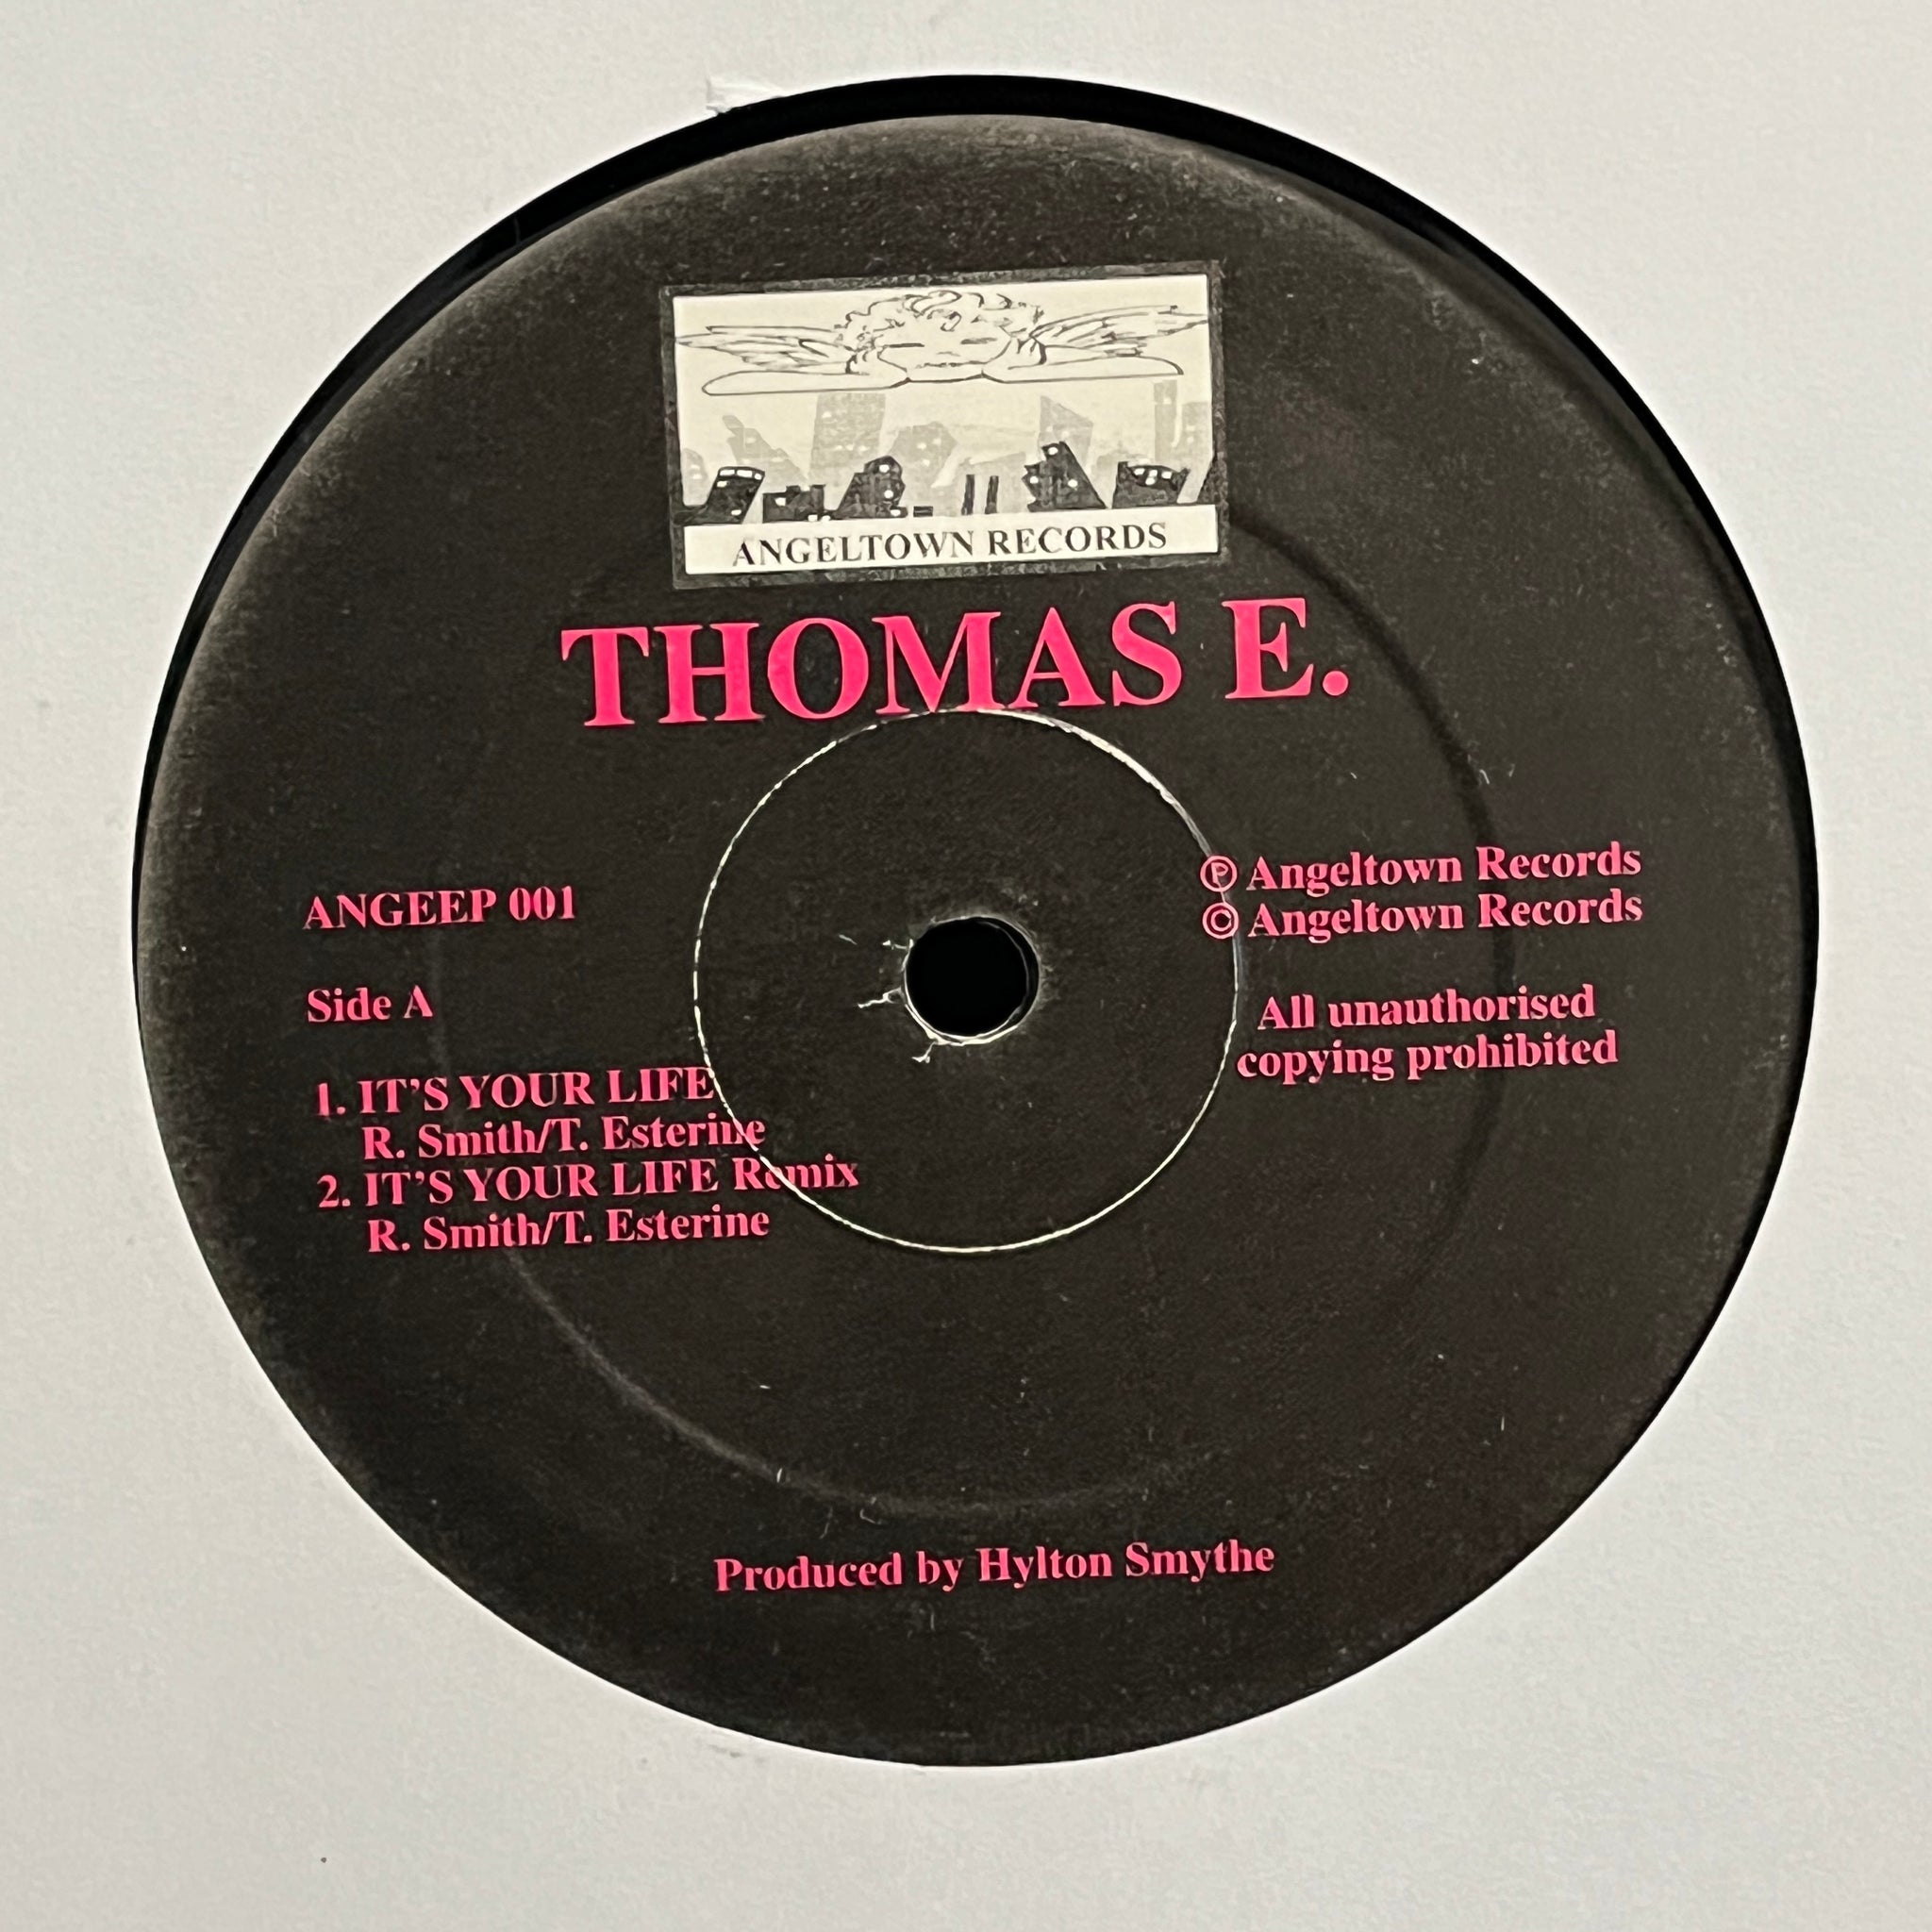 Thomas E. – Thomas E.